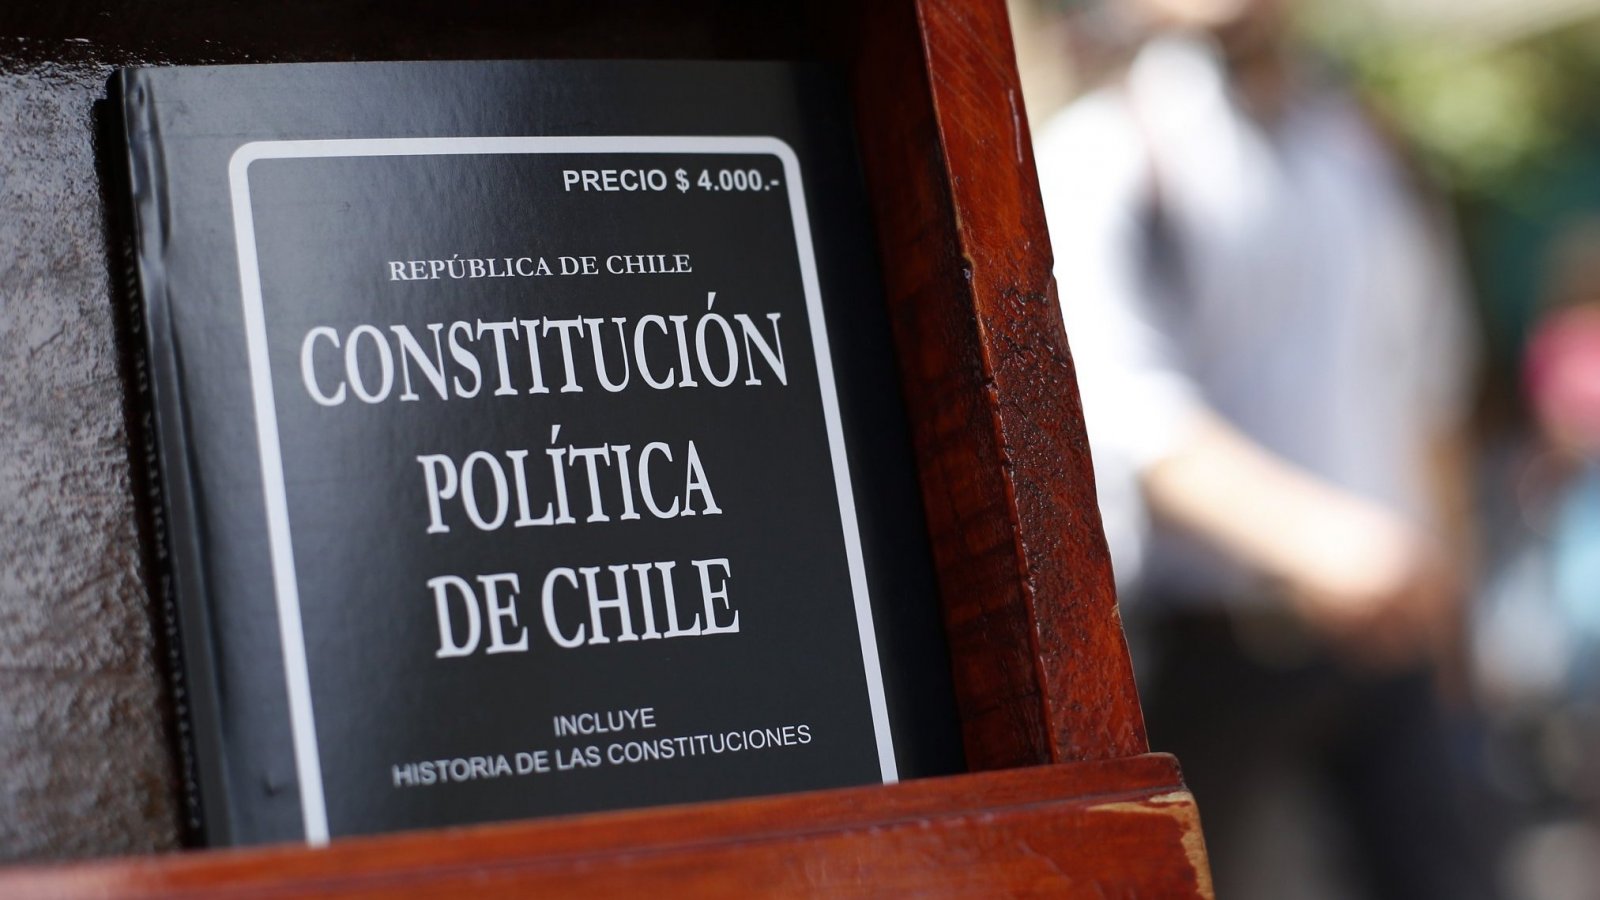 Libro de la Constitución de Chile apoyado en una vitrina.